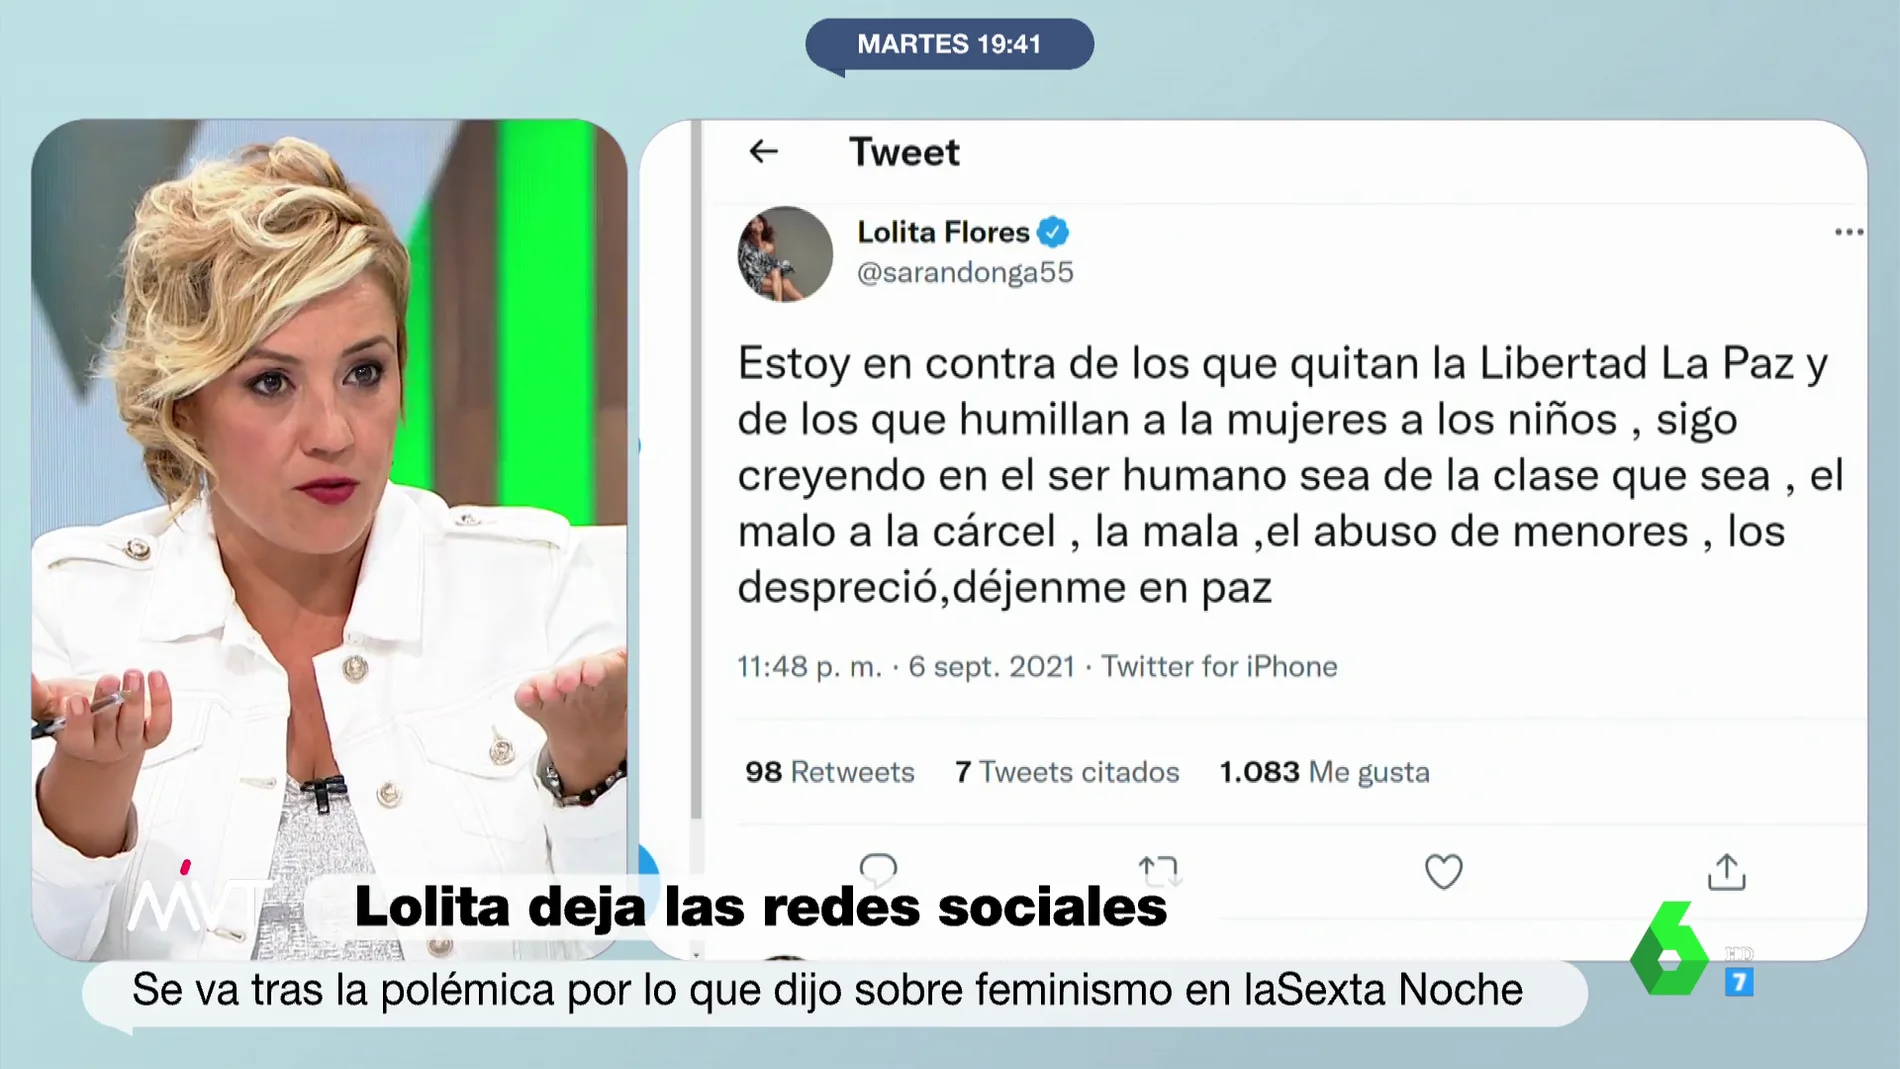 La indignación de Cristina Pardo ante las críticas a Lolita en Twitter